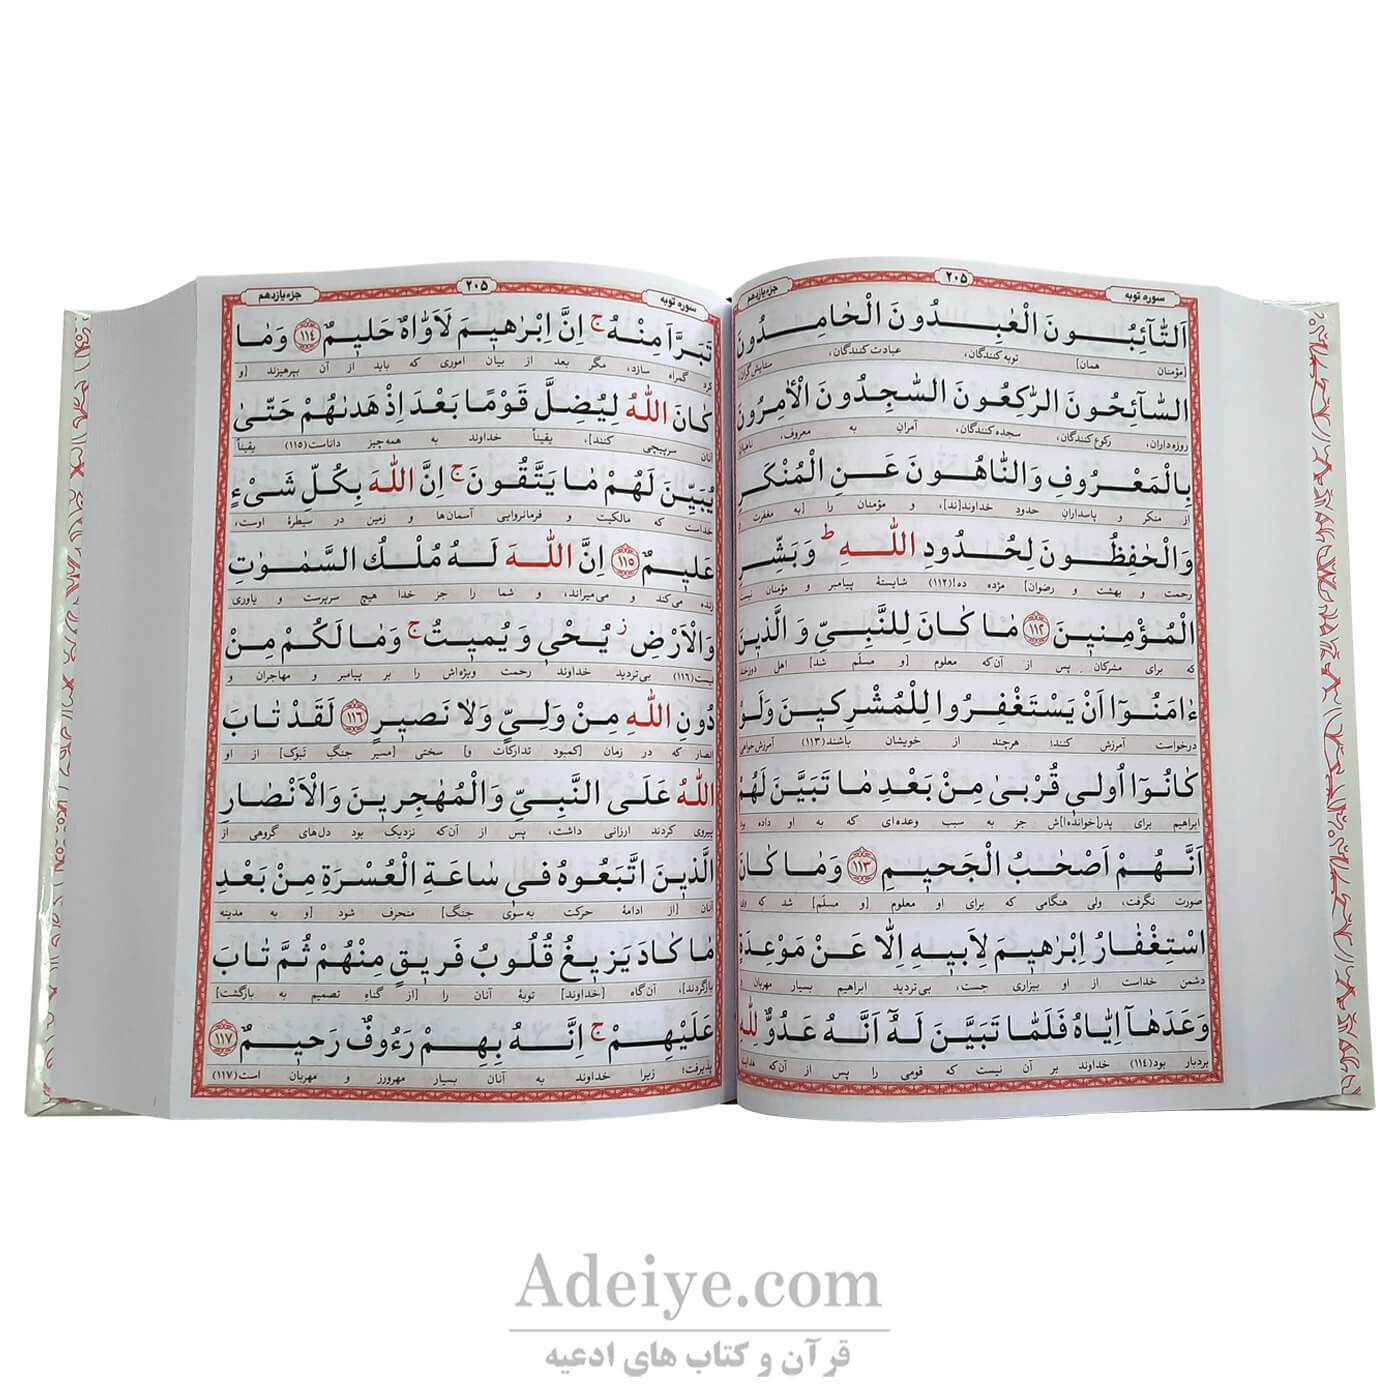 قرآن درشت خط کامپیوتری 120 صفحه ای درشت خط